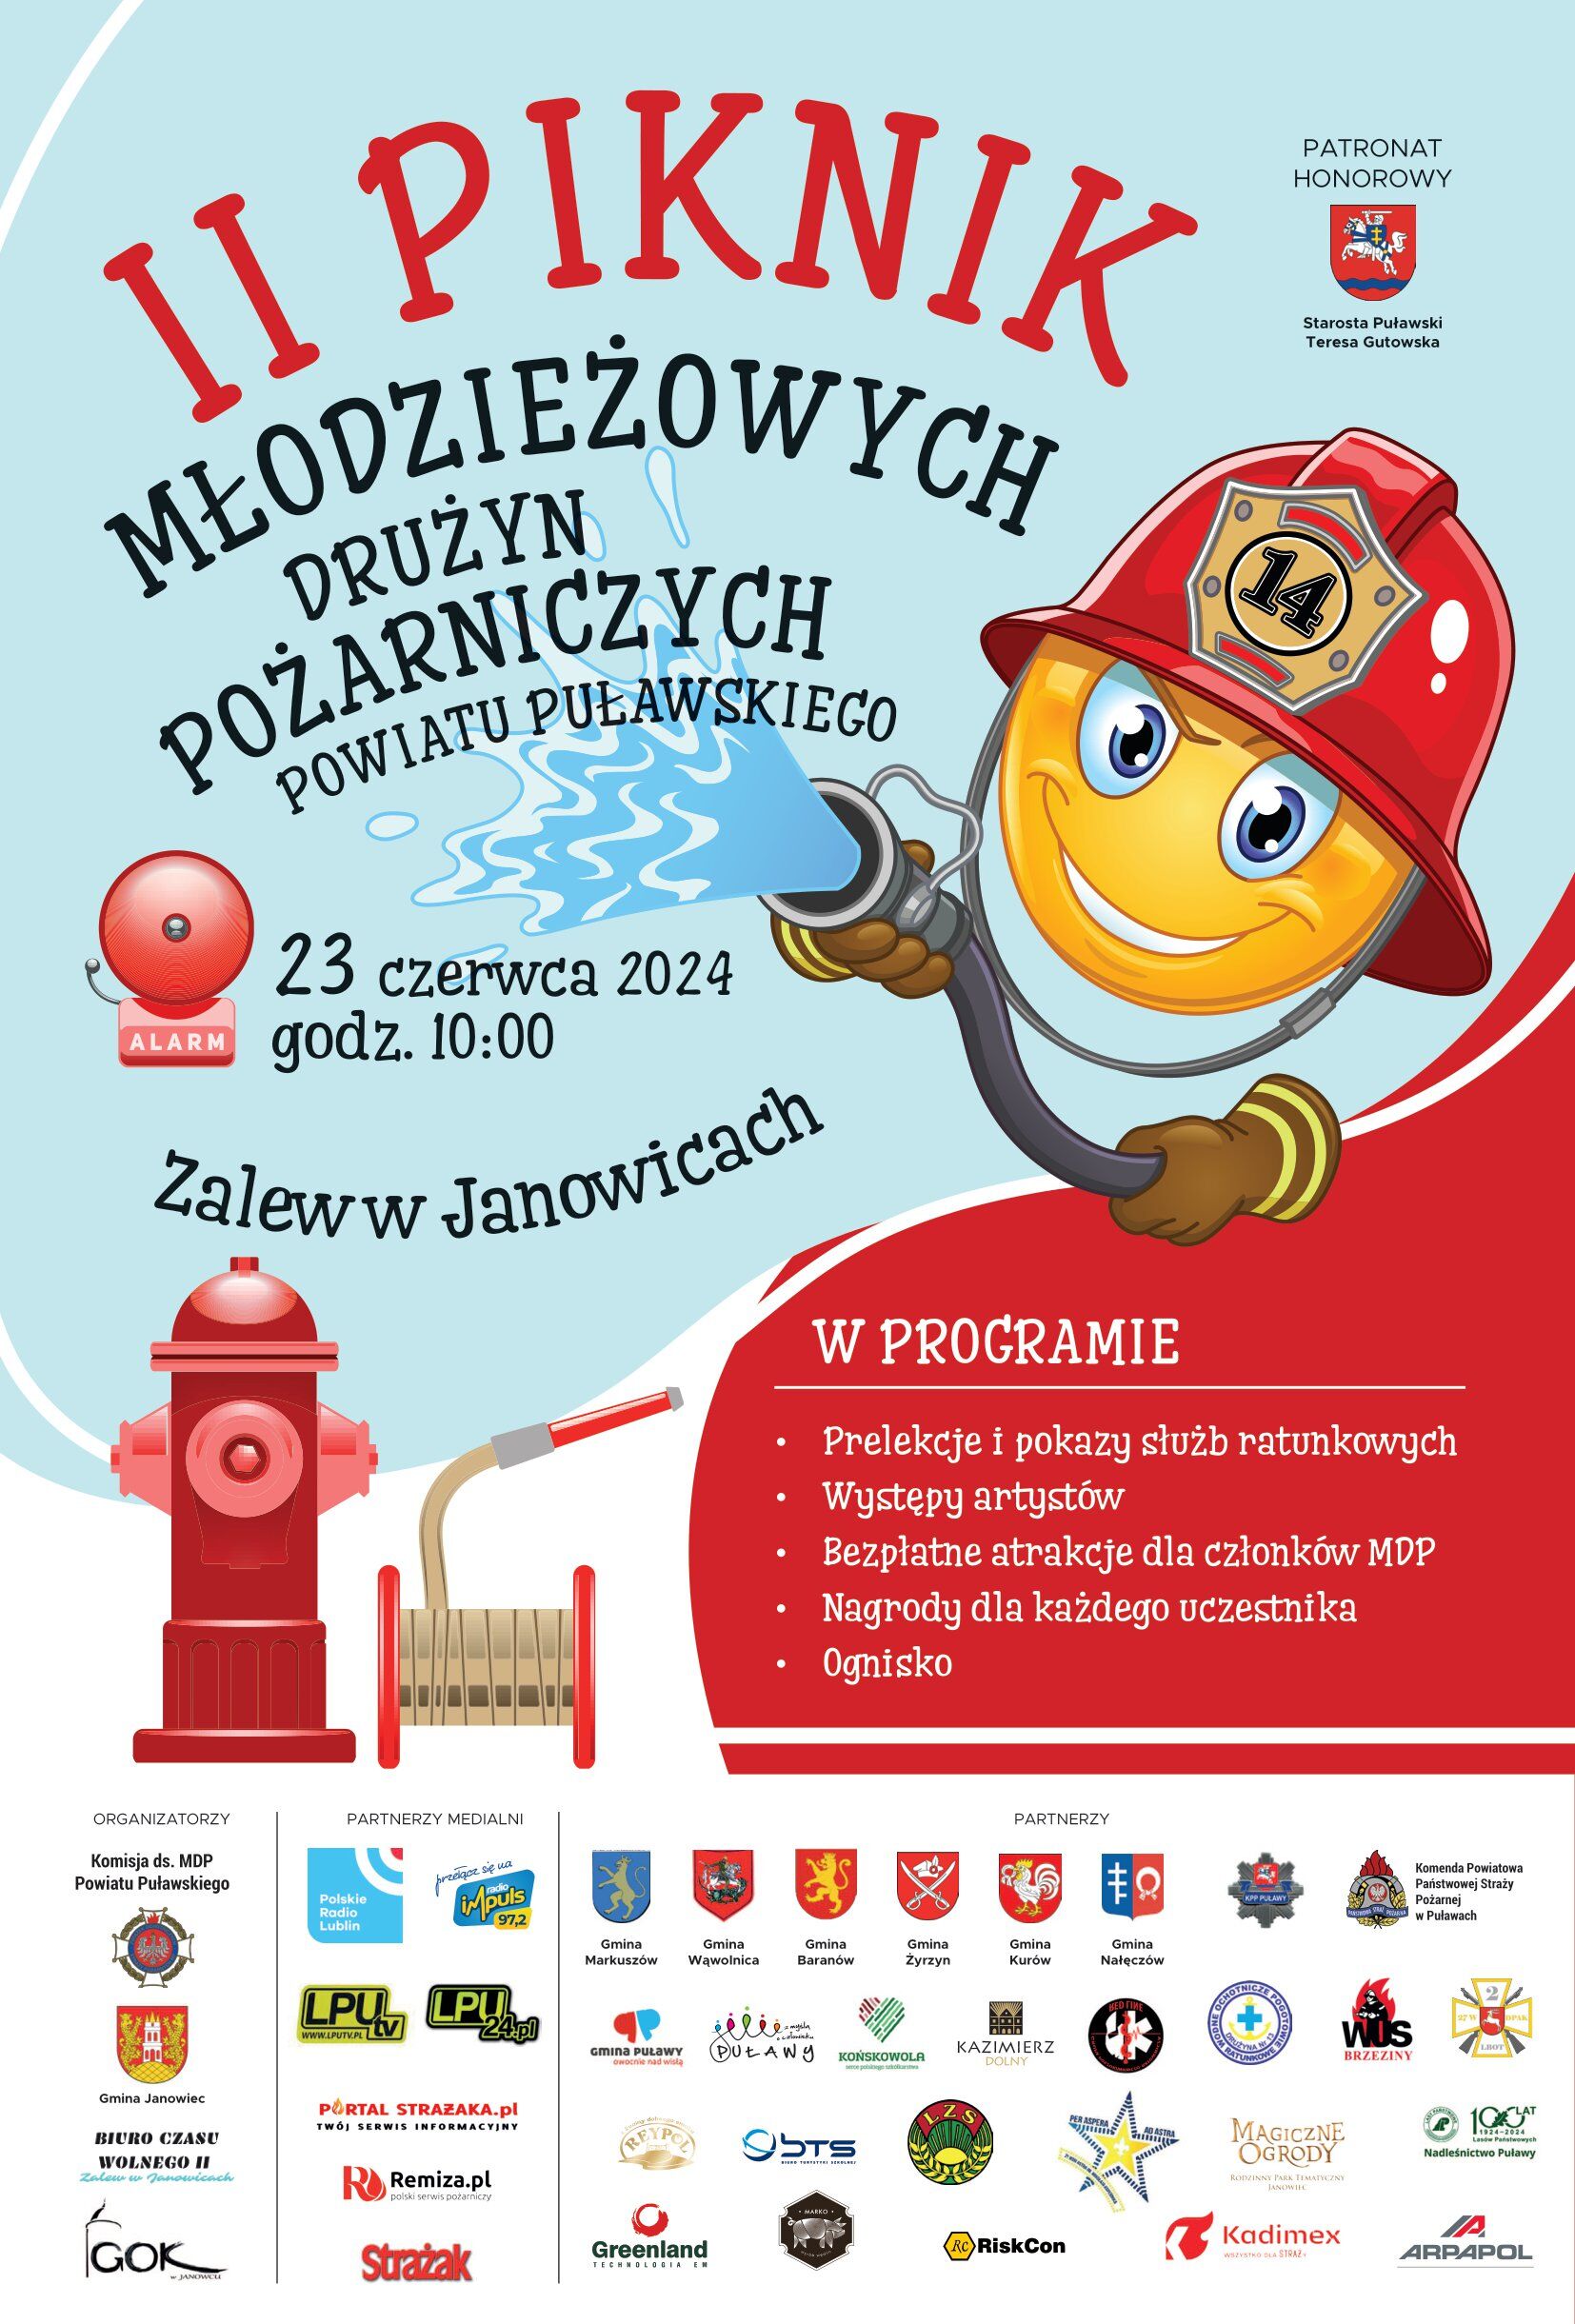 Plakat zapraszający na "II Piknik Młodzieżowych Ochotniczych Straży Pożarnych" z ilustracją roześmianego strażaka-kreskówki, informacjami o wydarzeniu, i logotypami sponsorów.